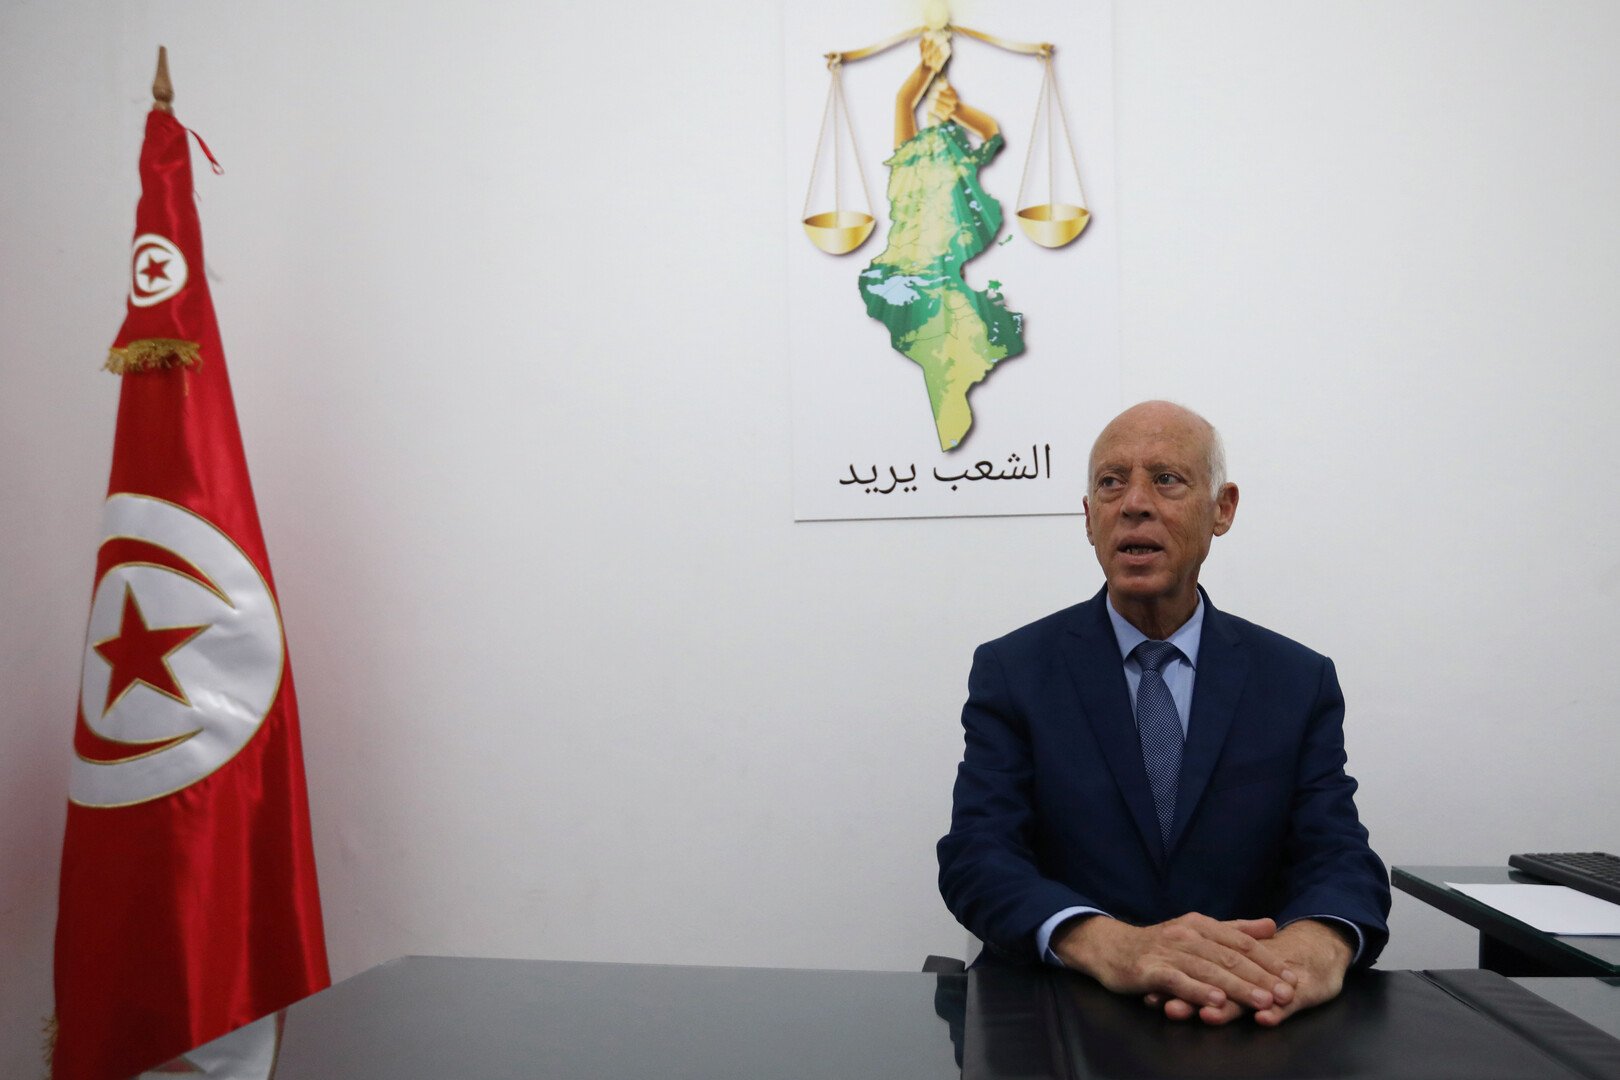 المرشح لرئاسة تونس يقرر عدم القيام بحملته الانتخابية لـ